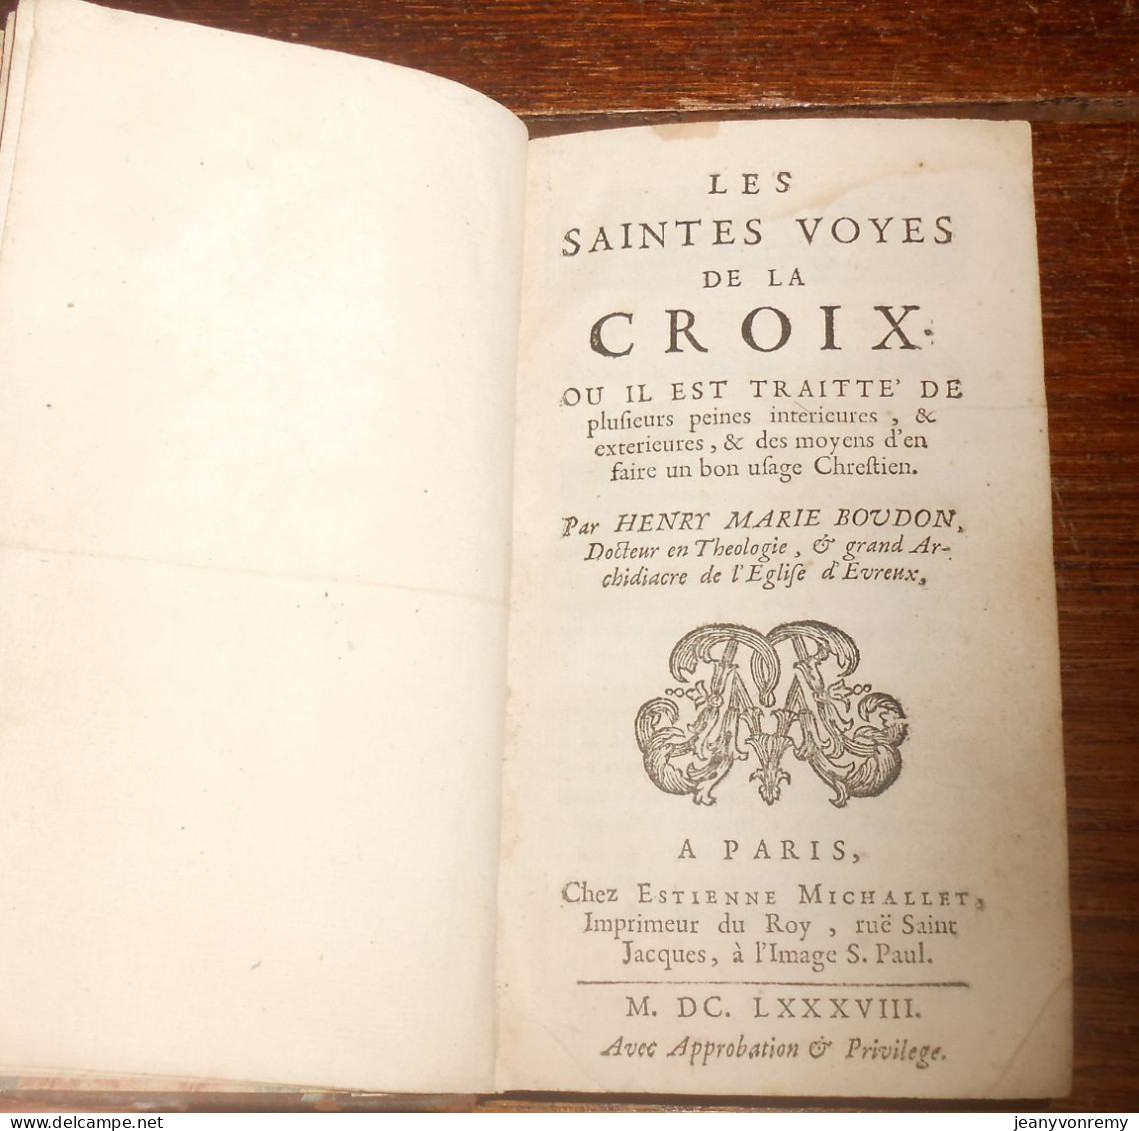 Les Saintes Voyes de la Croix. Henry Marie Boudon. 1688.